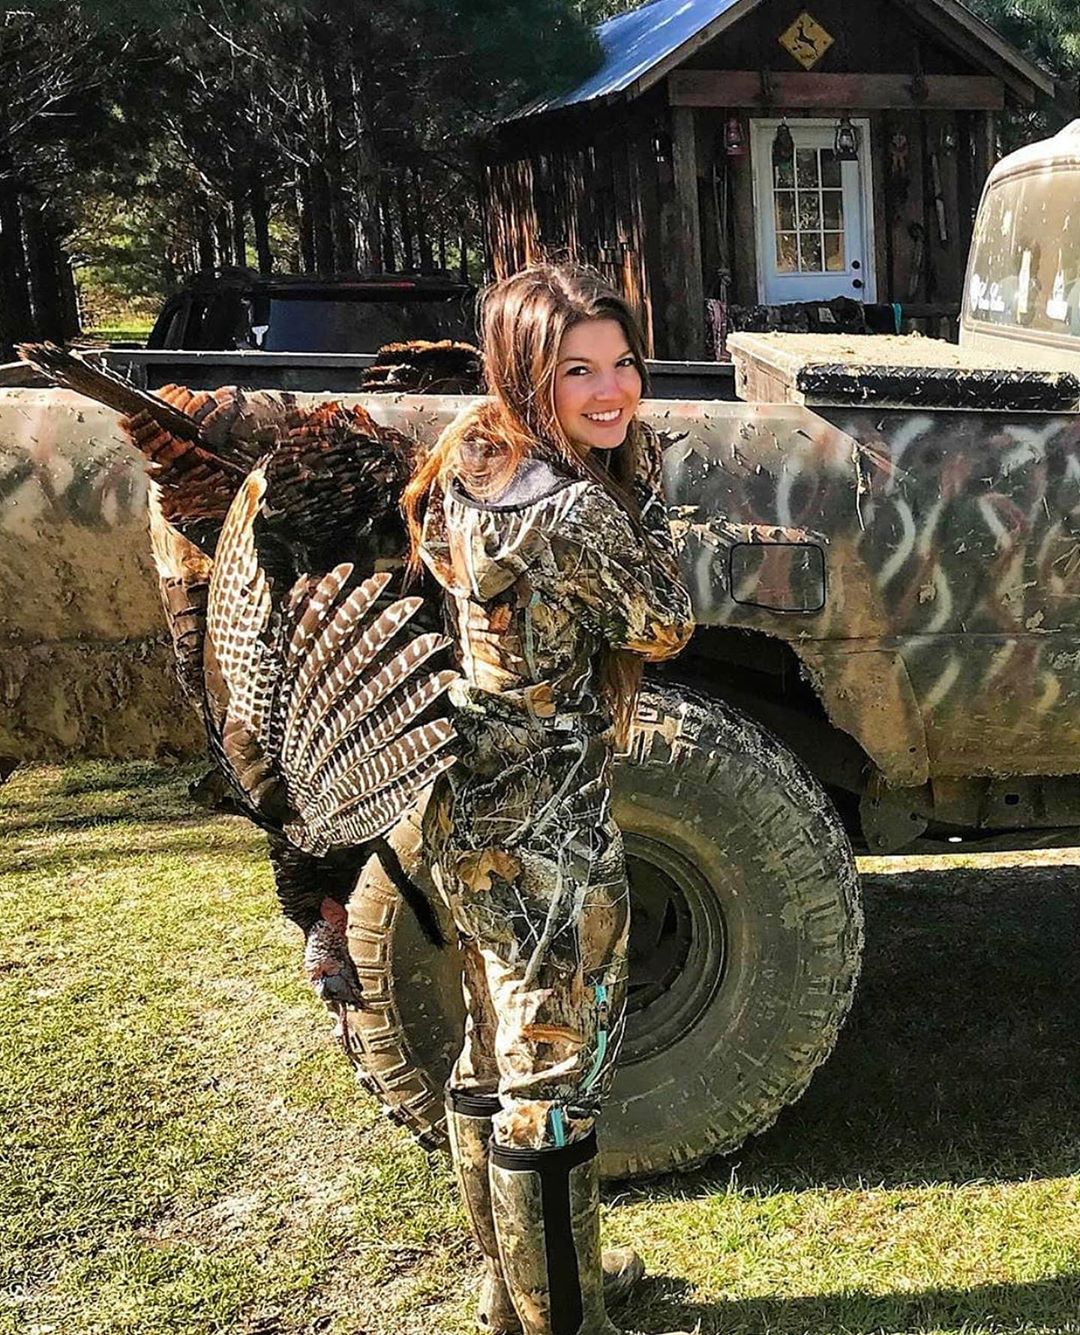 Красивые девушки на охоте: в Instagram появился аккаунт, который многие осудят. ФОТО